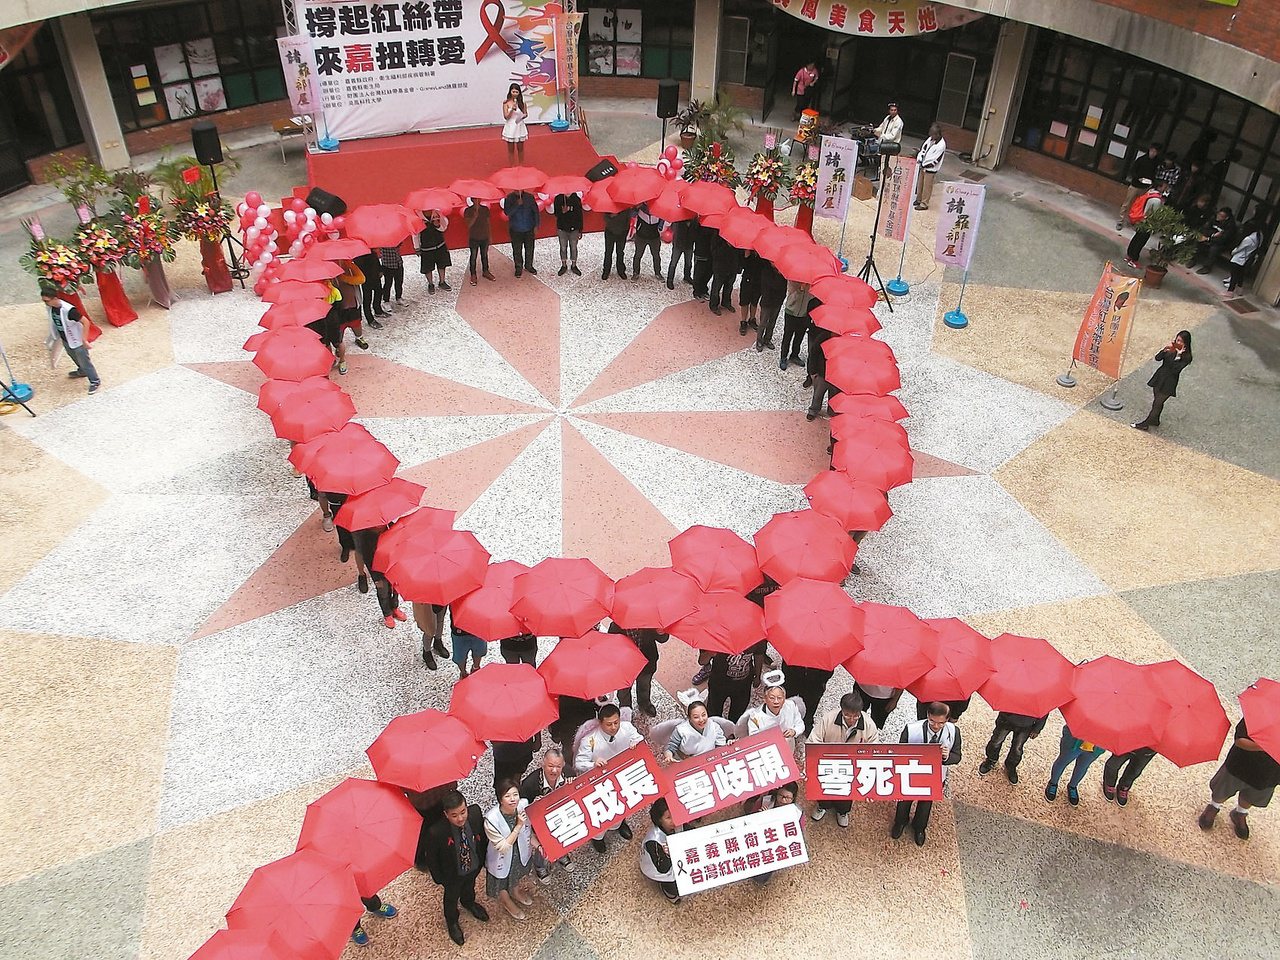 200名學生一同撐起紅色雨傘，排列成象徵關懷愛滋的巨型紅絲帶，期許邁向「愛滋三零」的目標「零成長、零歧視、零死亡」。